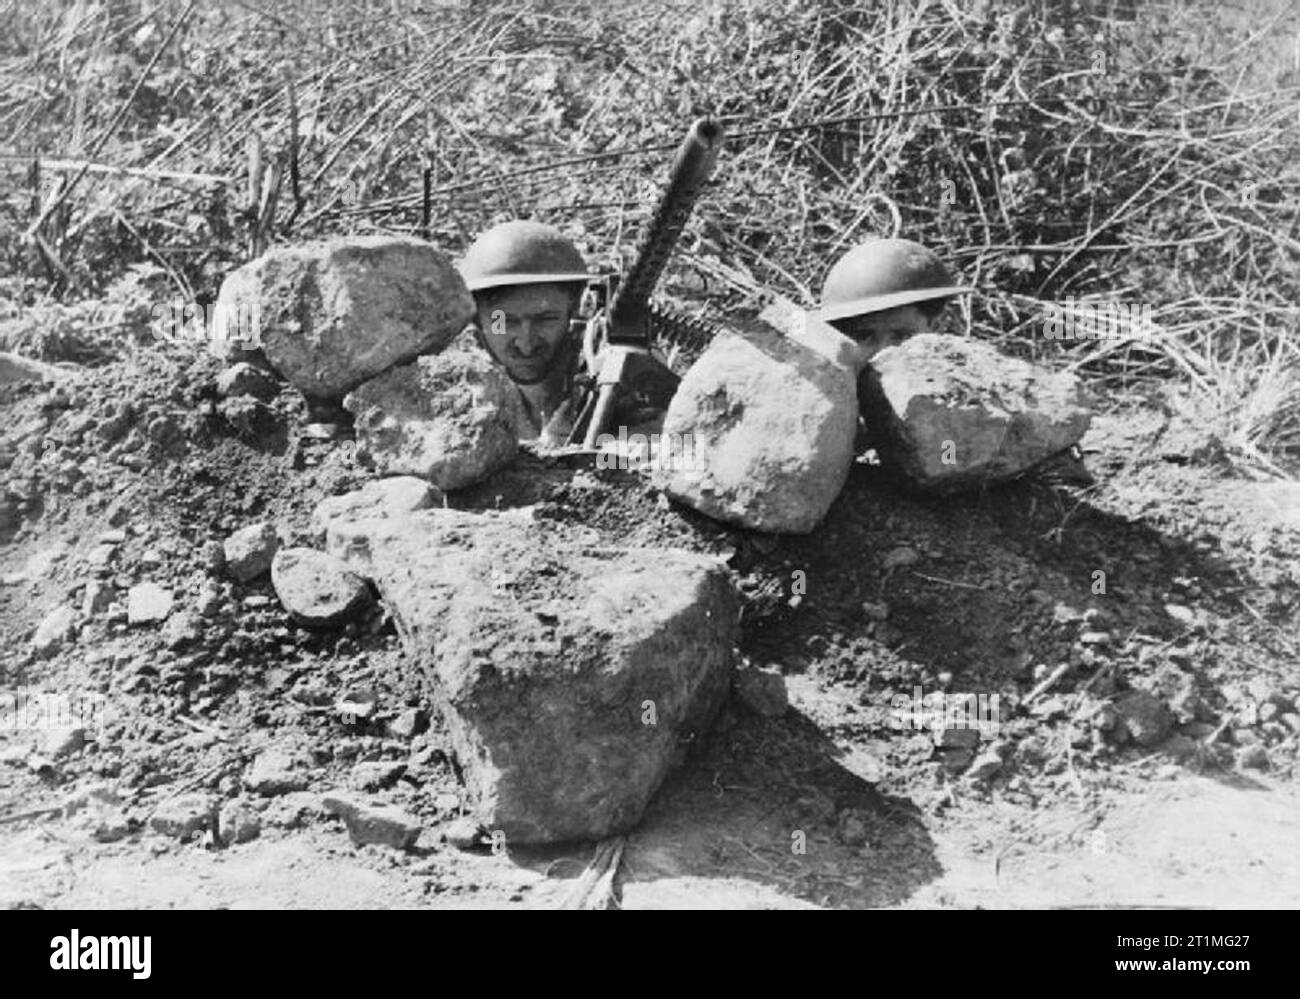 Der Krieg im Fernen Osten - der Burma Campaign 1941-1945 Die Schlacht von Imphal-Kohima März - Juli 1944: Britische Infanteristen mit einem ausgebauten tank Maschinengewehr auf Kohima. Stockfoto